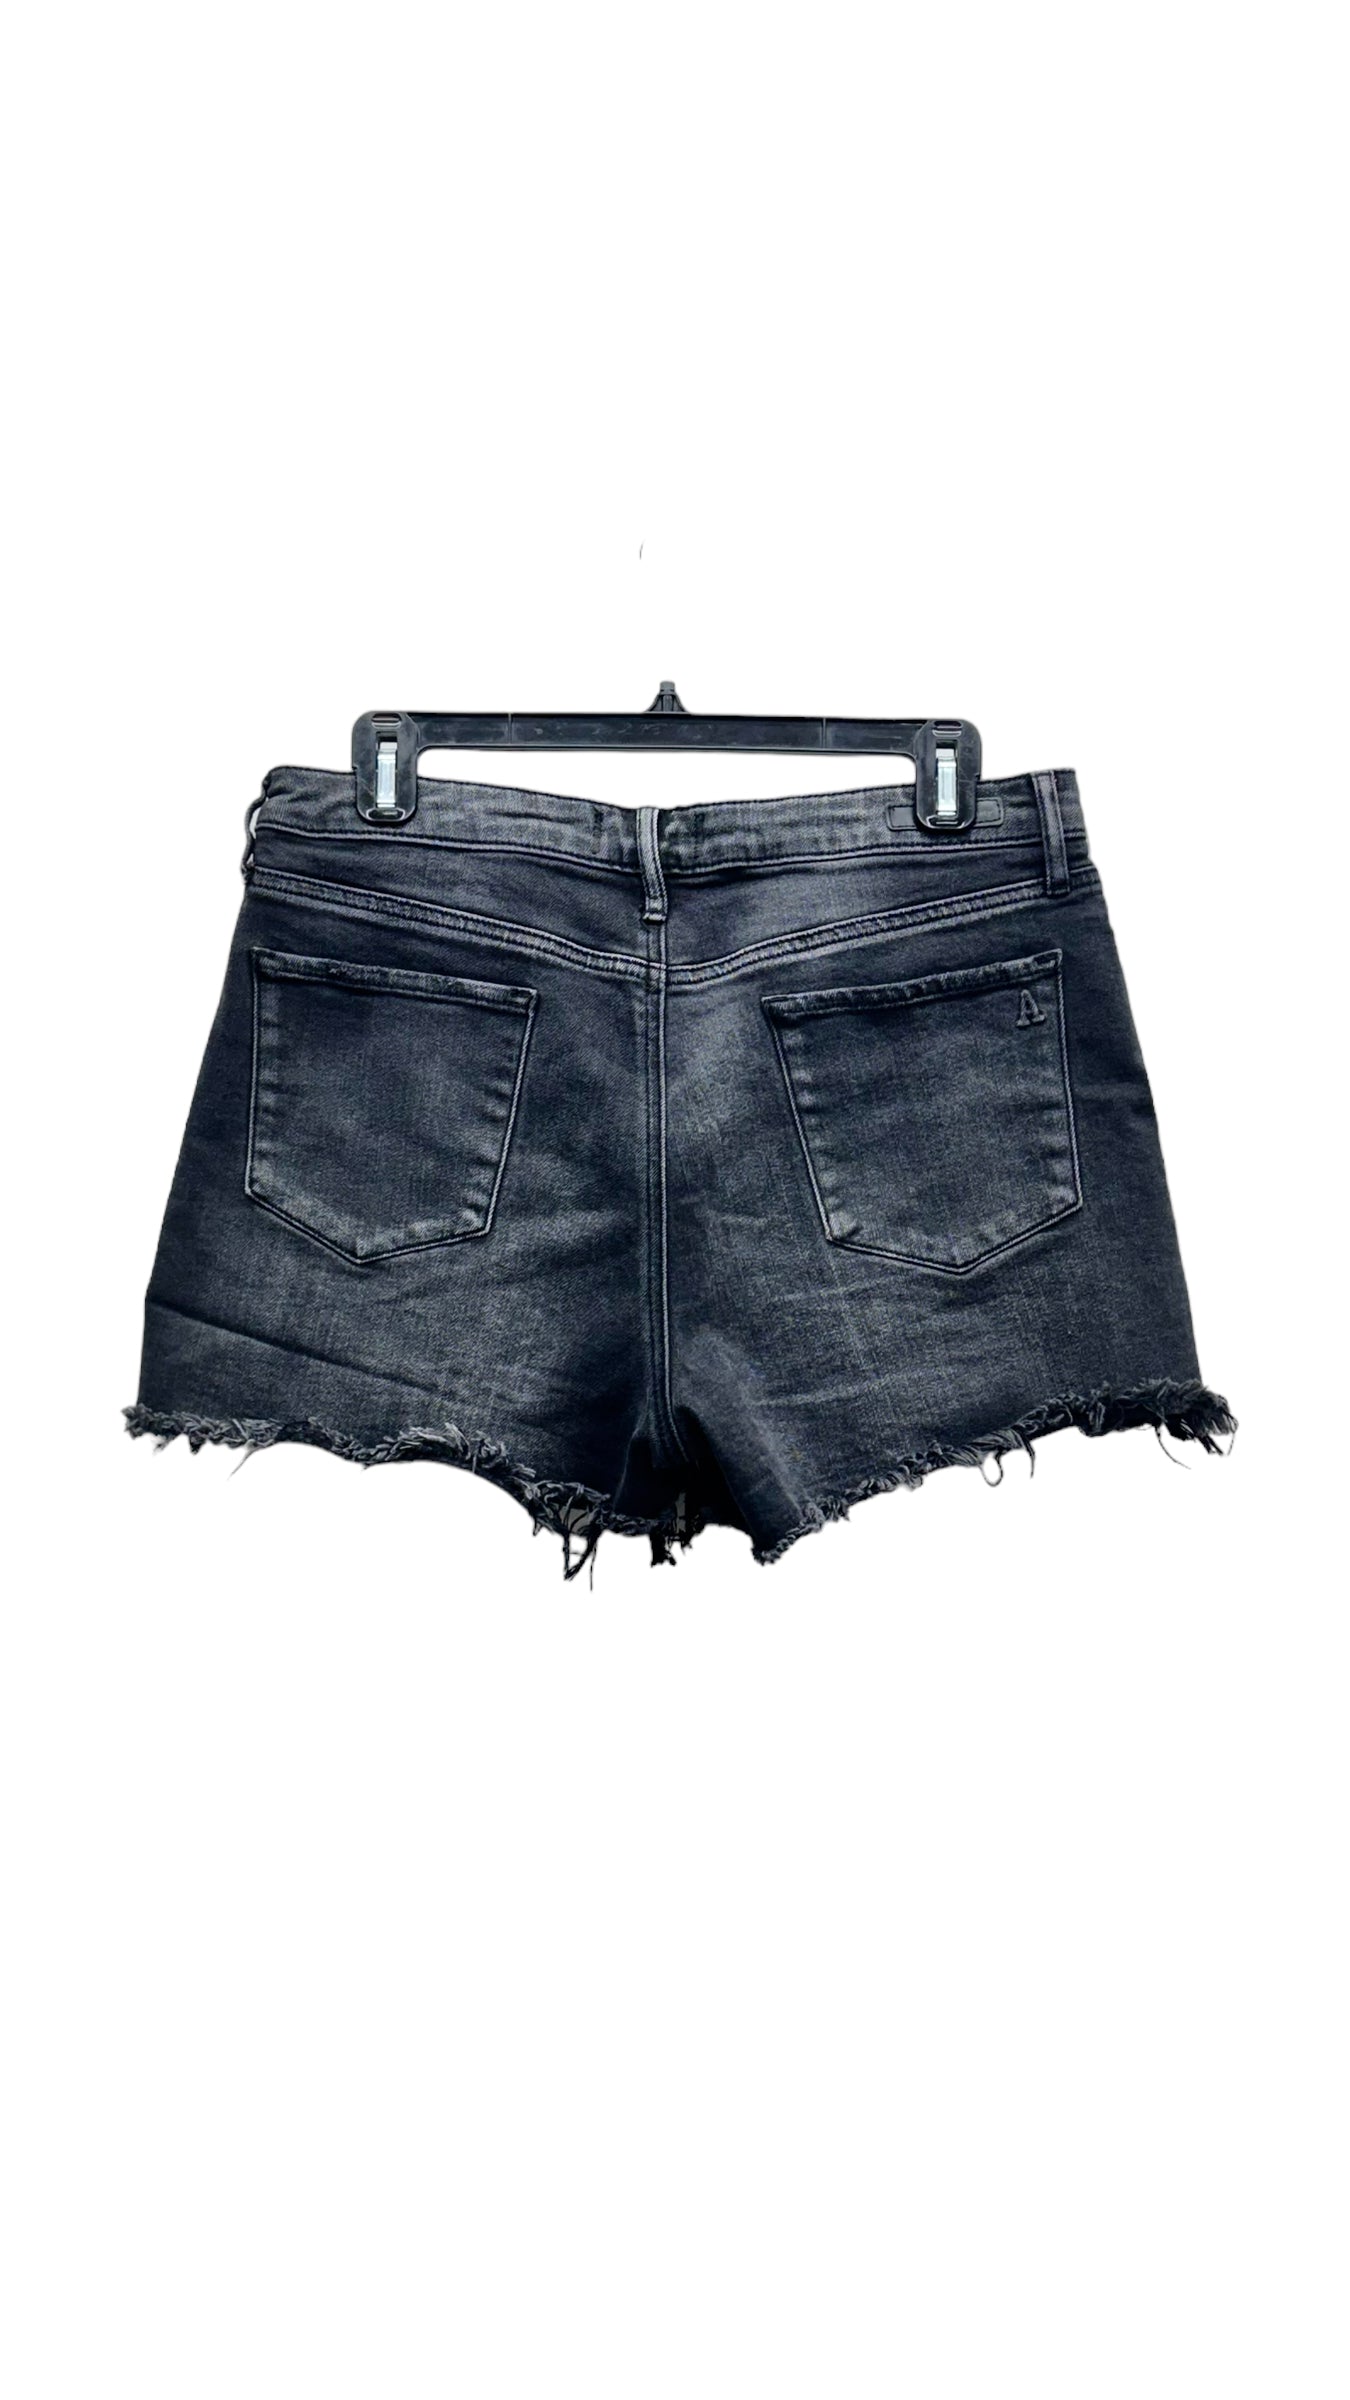 Levi’s Denim Women's Shorts Medium Washed - Size 28